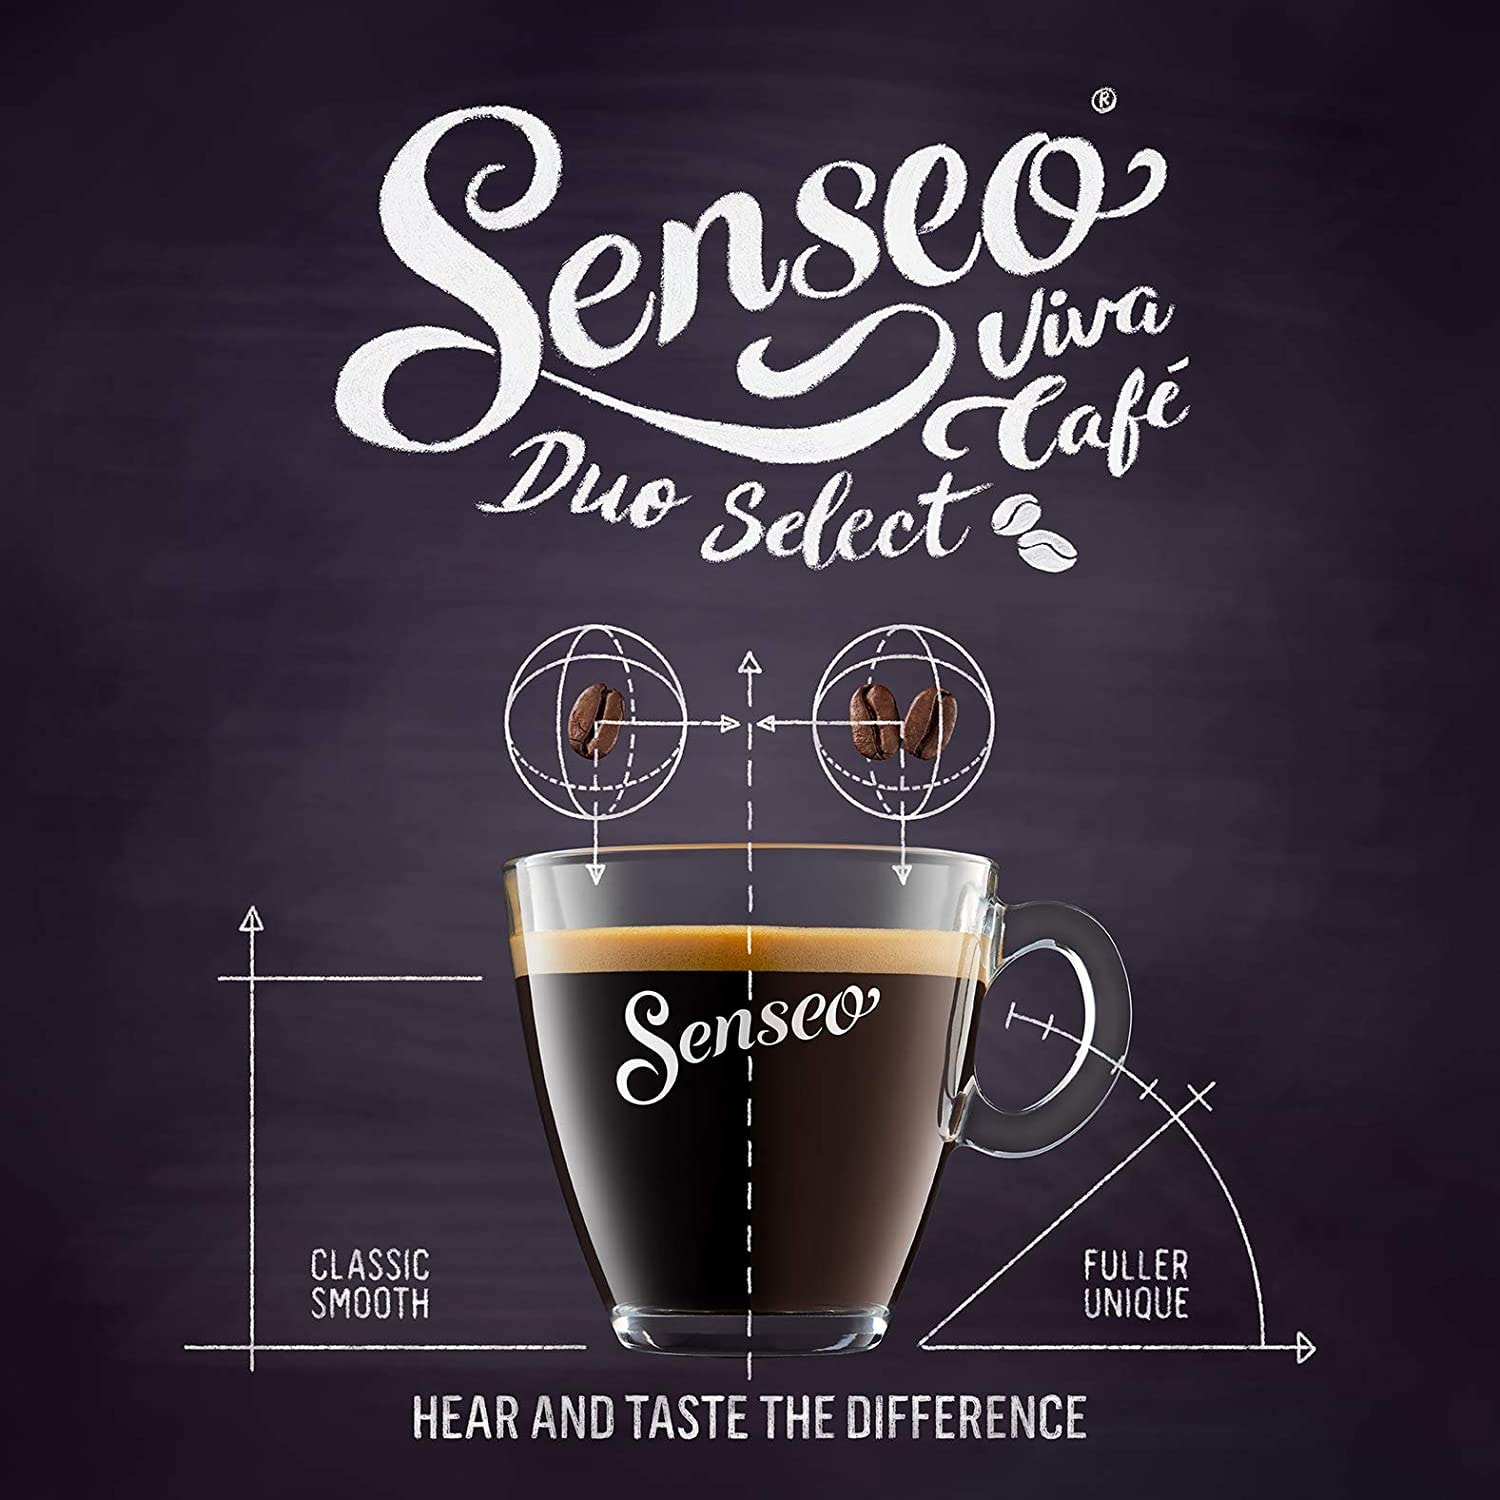 Senseo Viva Café Duo: Notre Test Complet